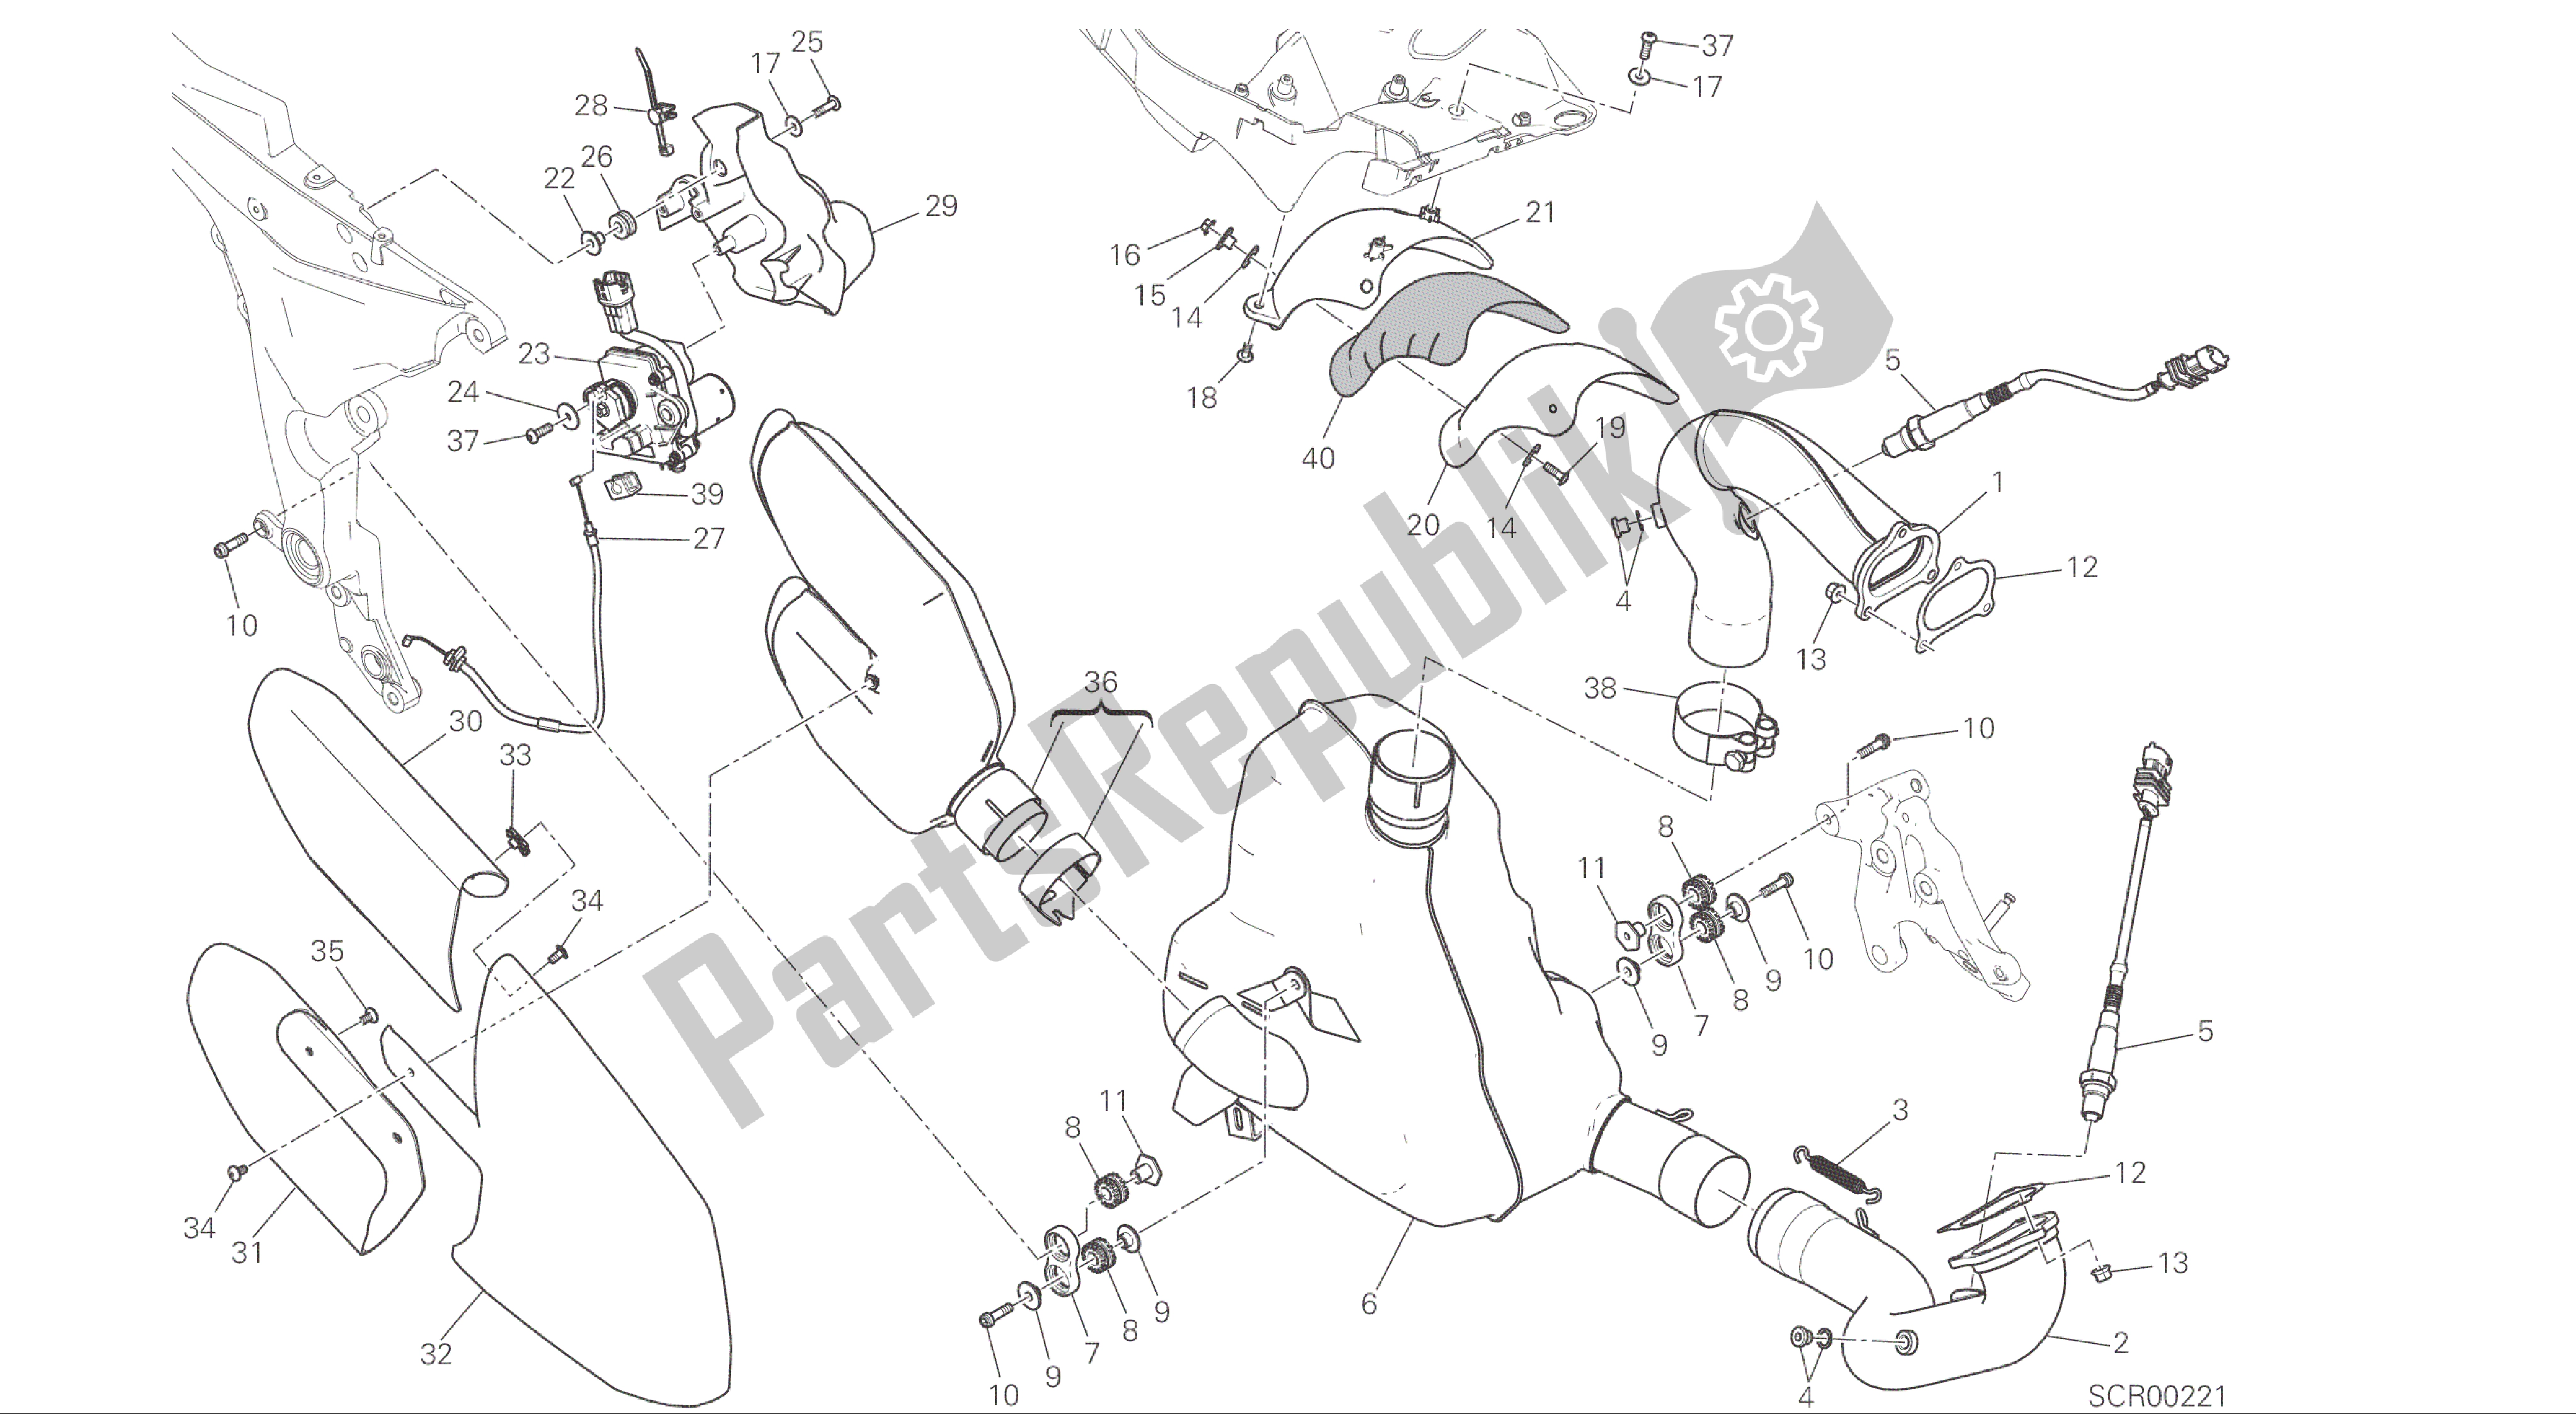 Alle onderdelen voor de Tekening 019 - Uitlaatsysteem [mod: Ms1200; Xst: Aus, Eur, Fra, Jap] Groepsframe van de Ducati Multistrada 1200 2015